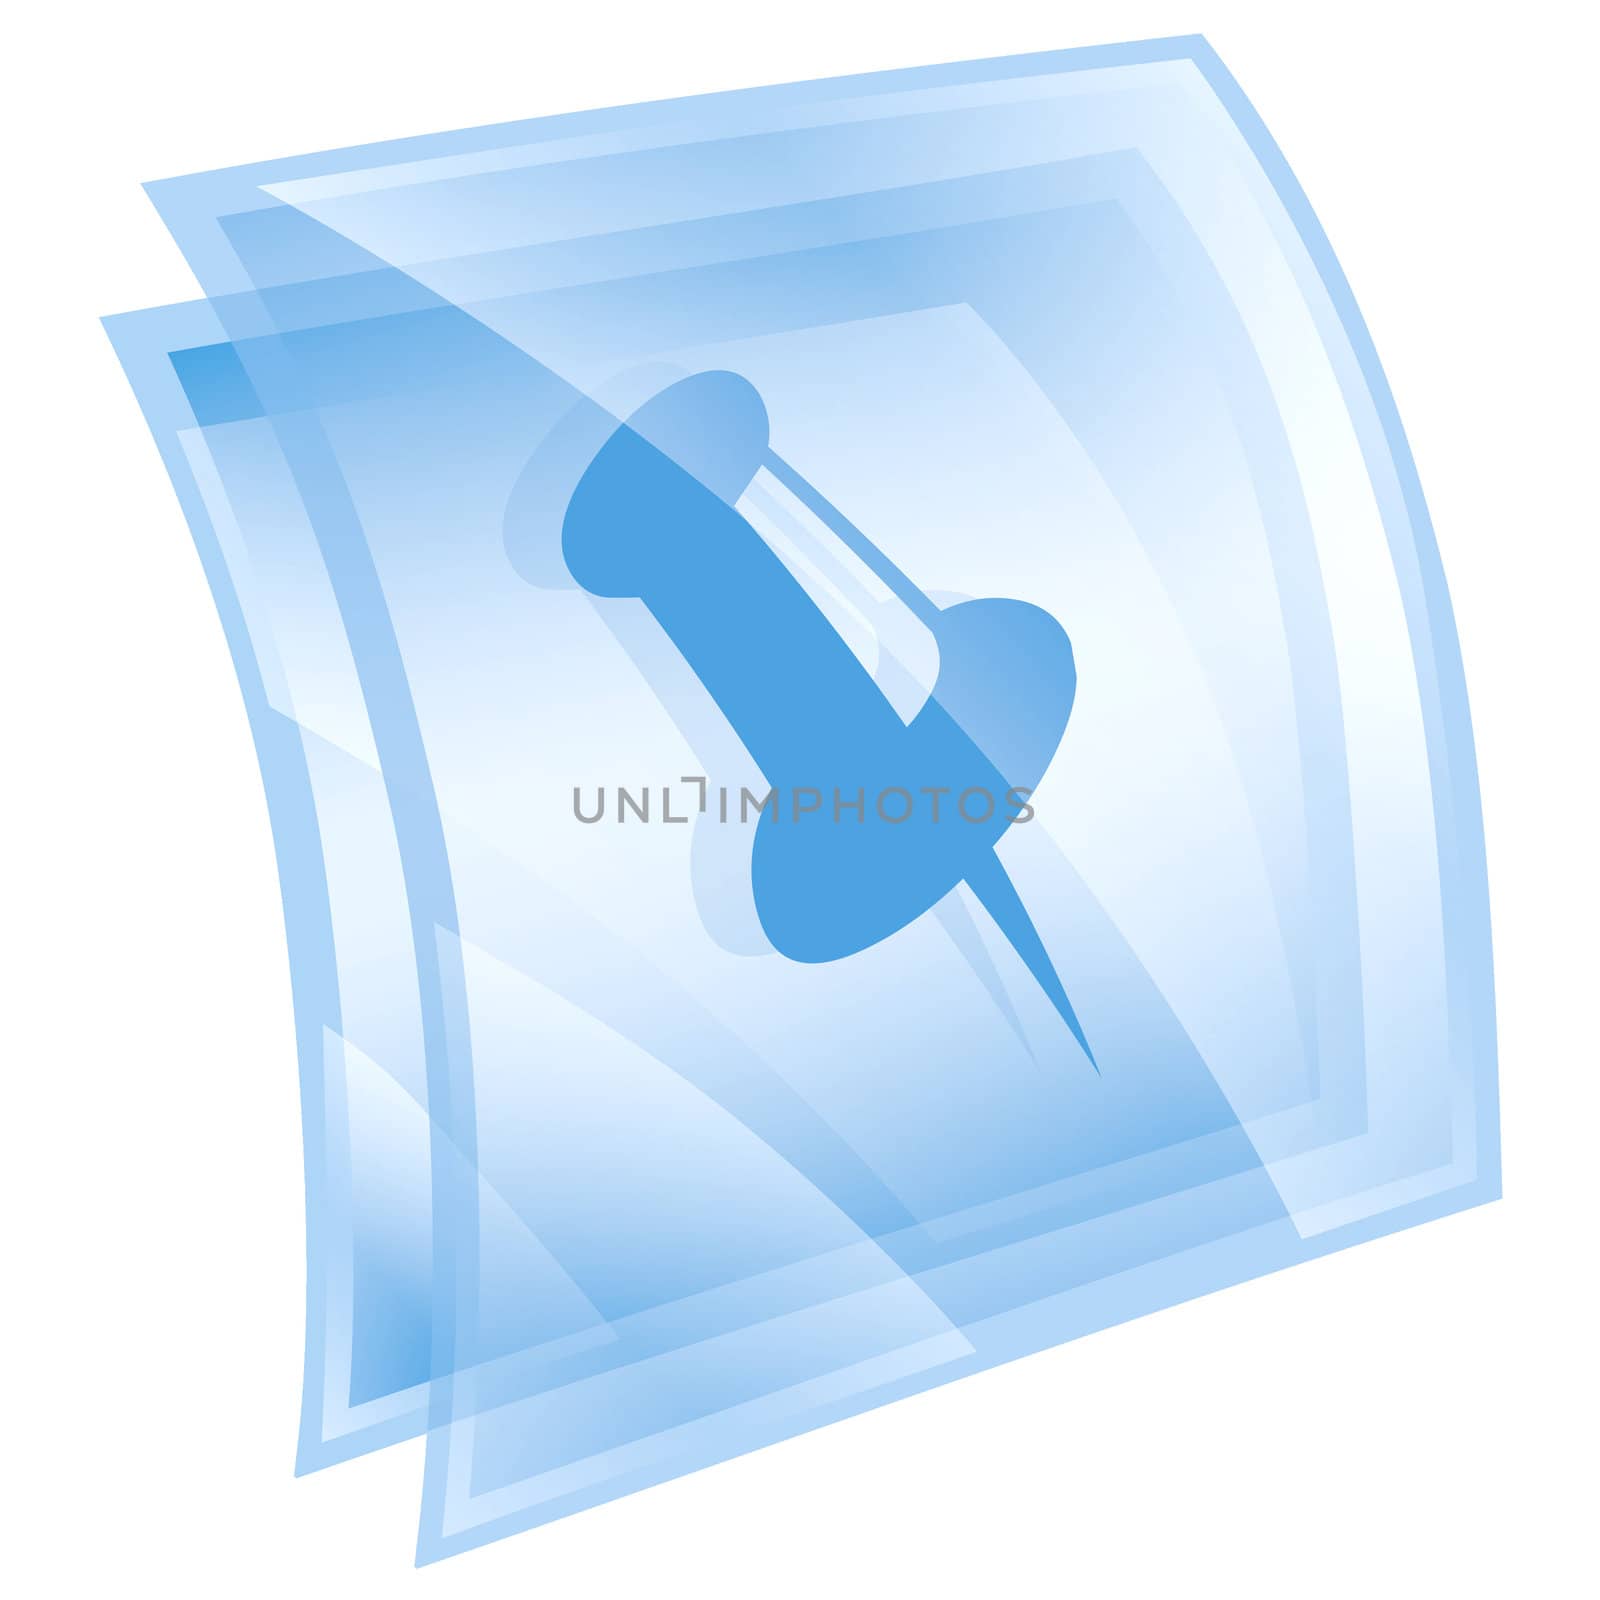 thumbtack icon blue, isolated on white background.